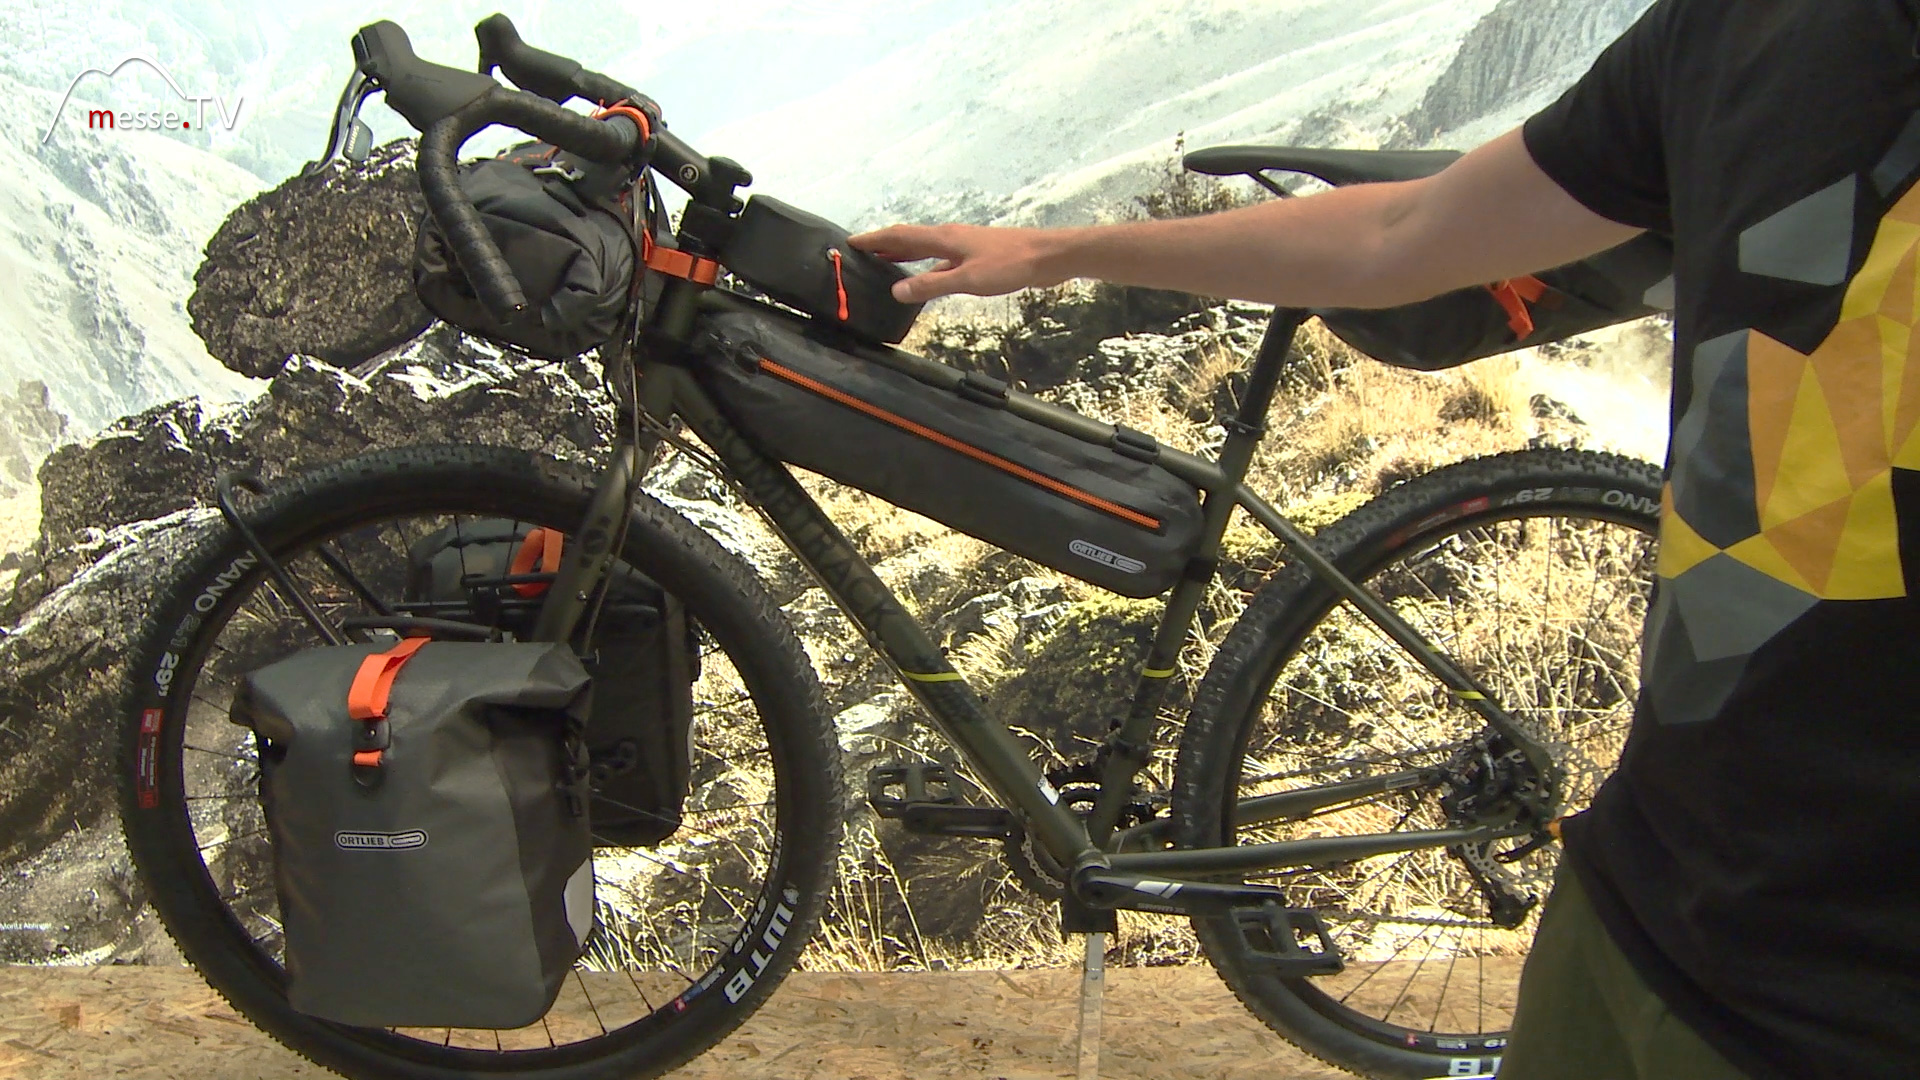 Seatpack bike bags waterproof Ortlieb Fair Outdoor